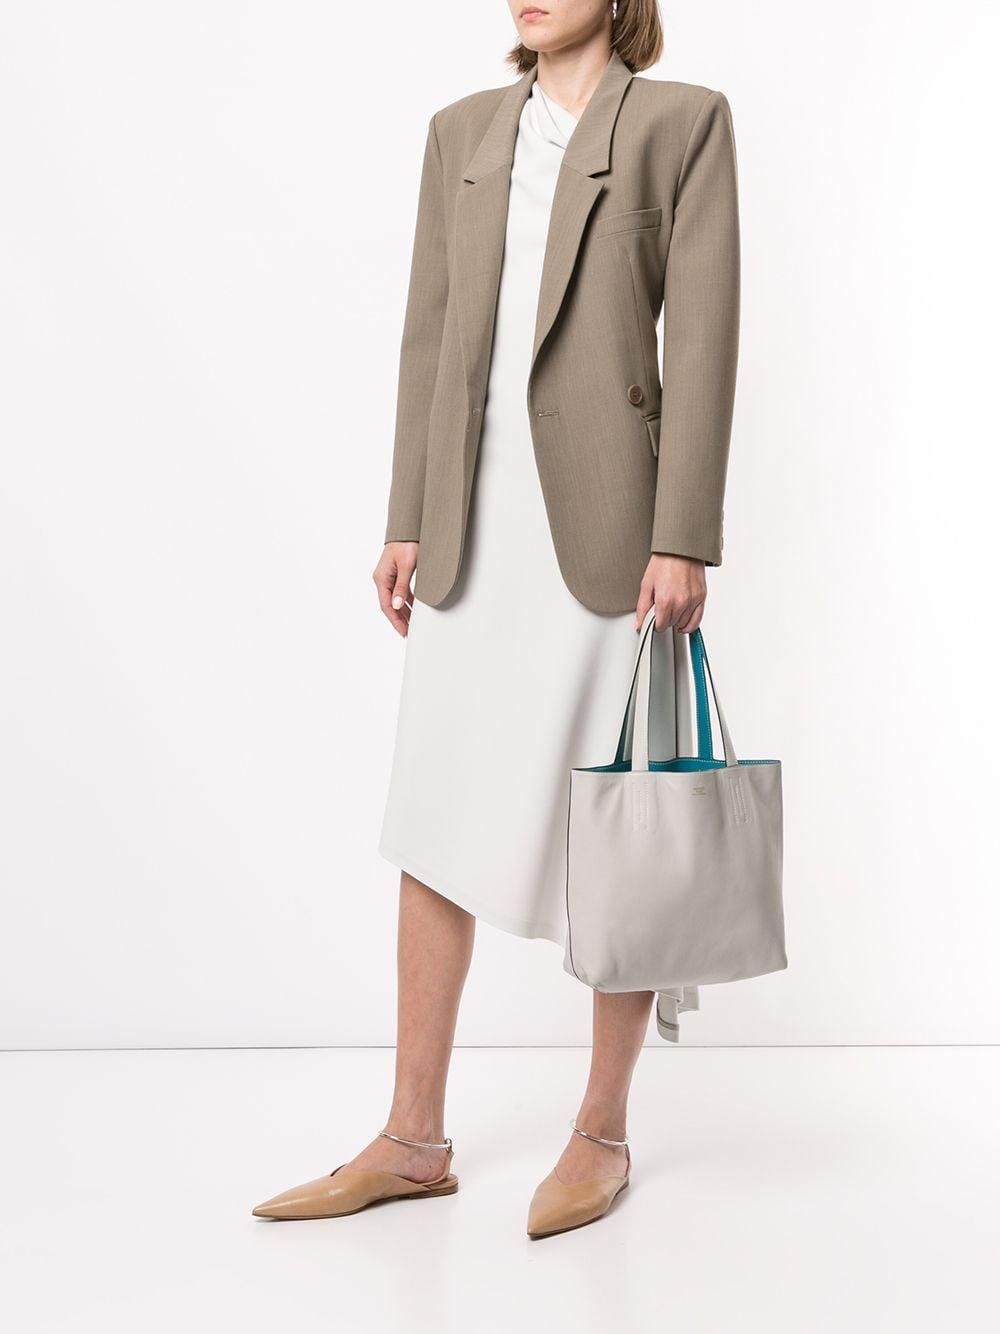 Hermès Double Sens Leather Tote Bag